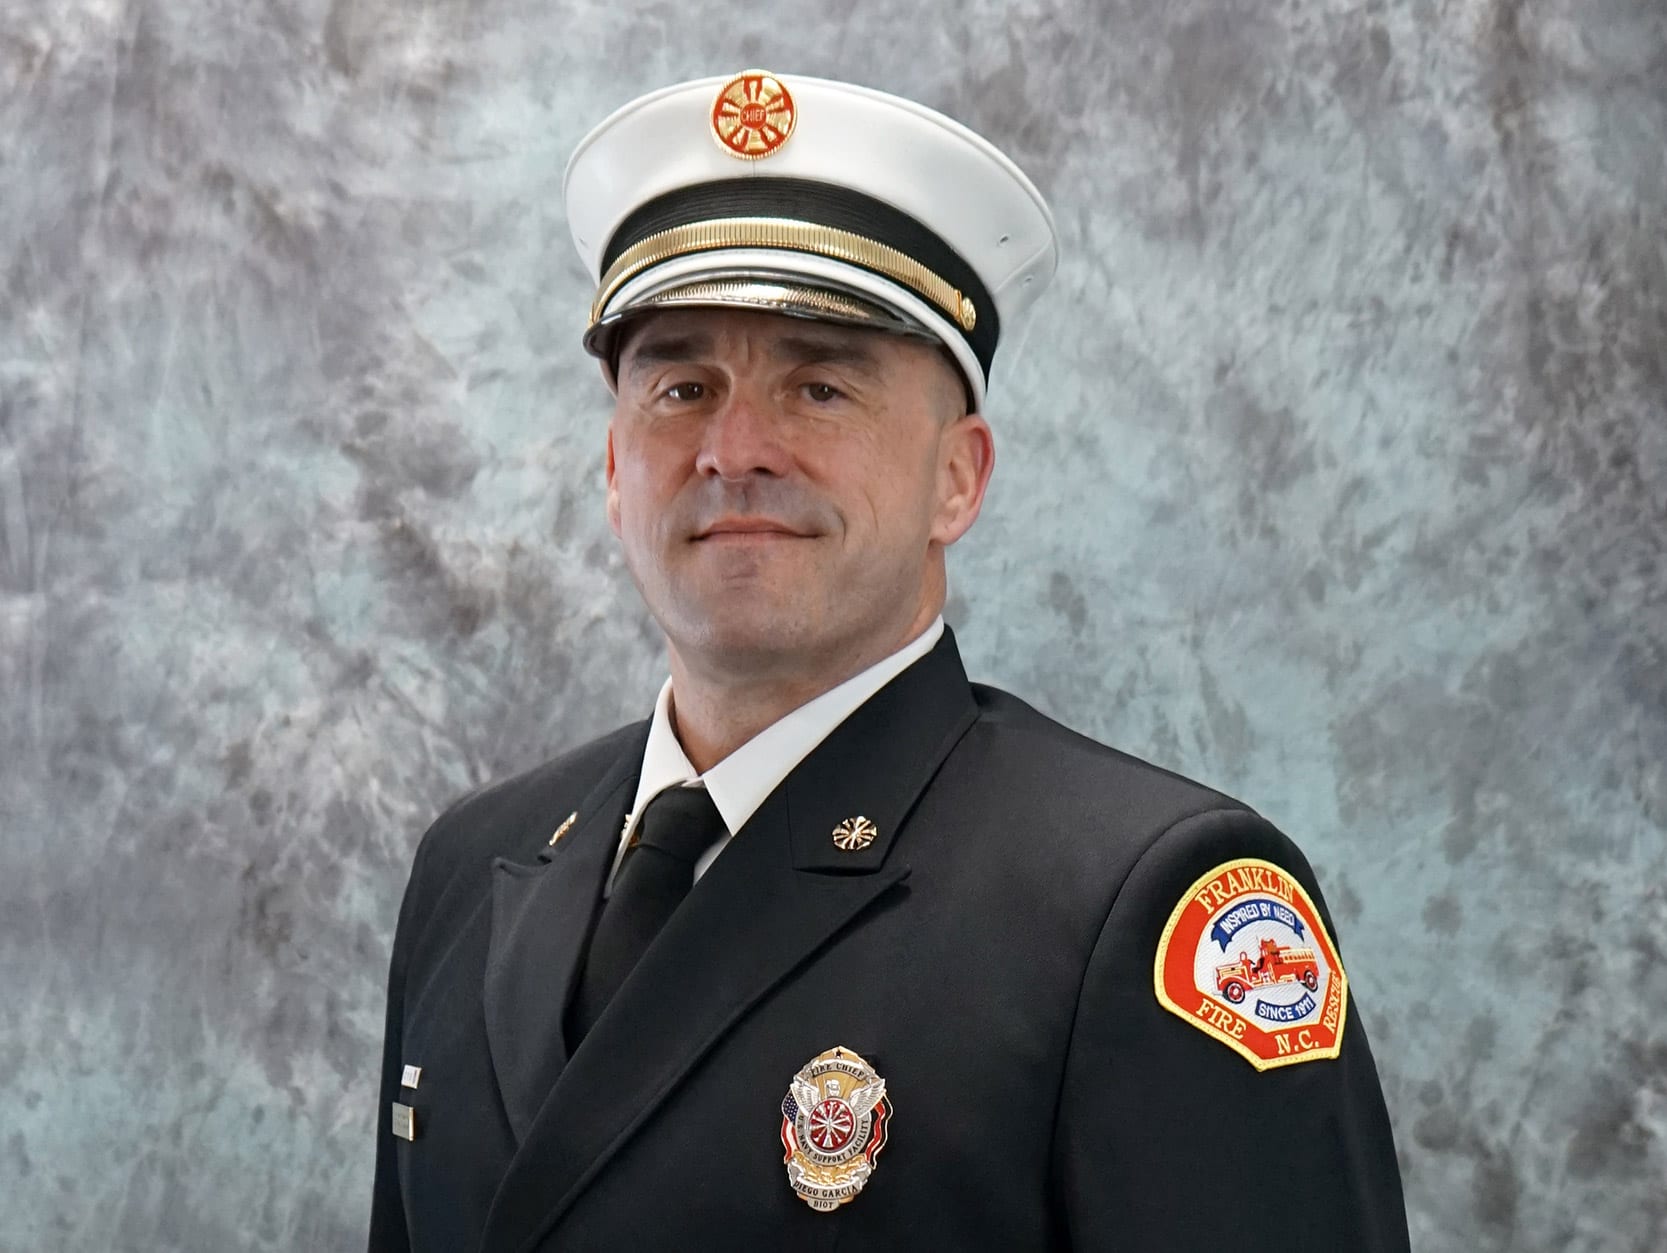 Chief Ben Ormond Franklin Fire Rescue